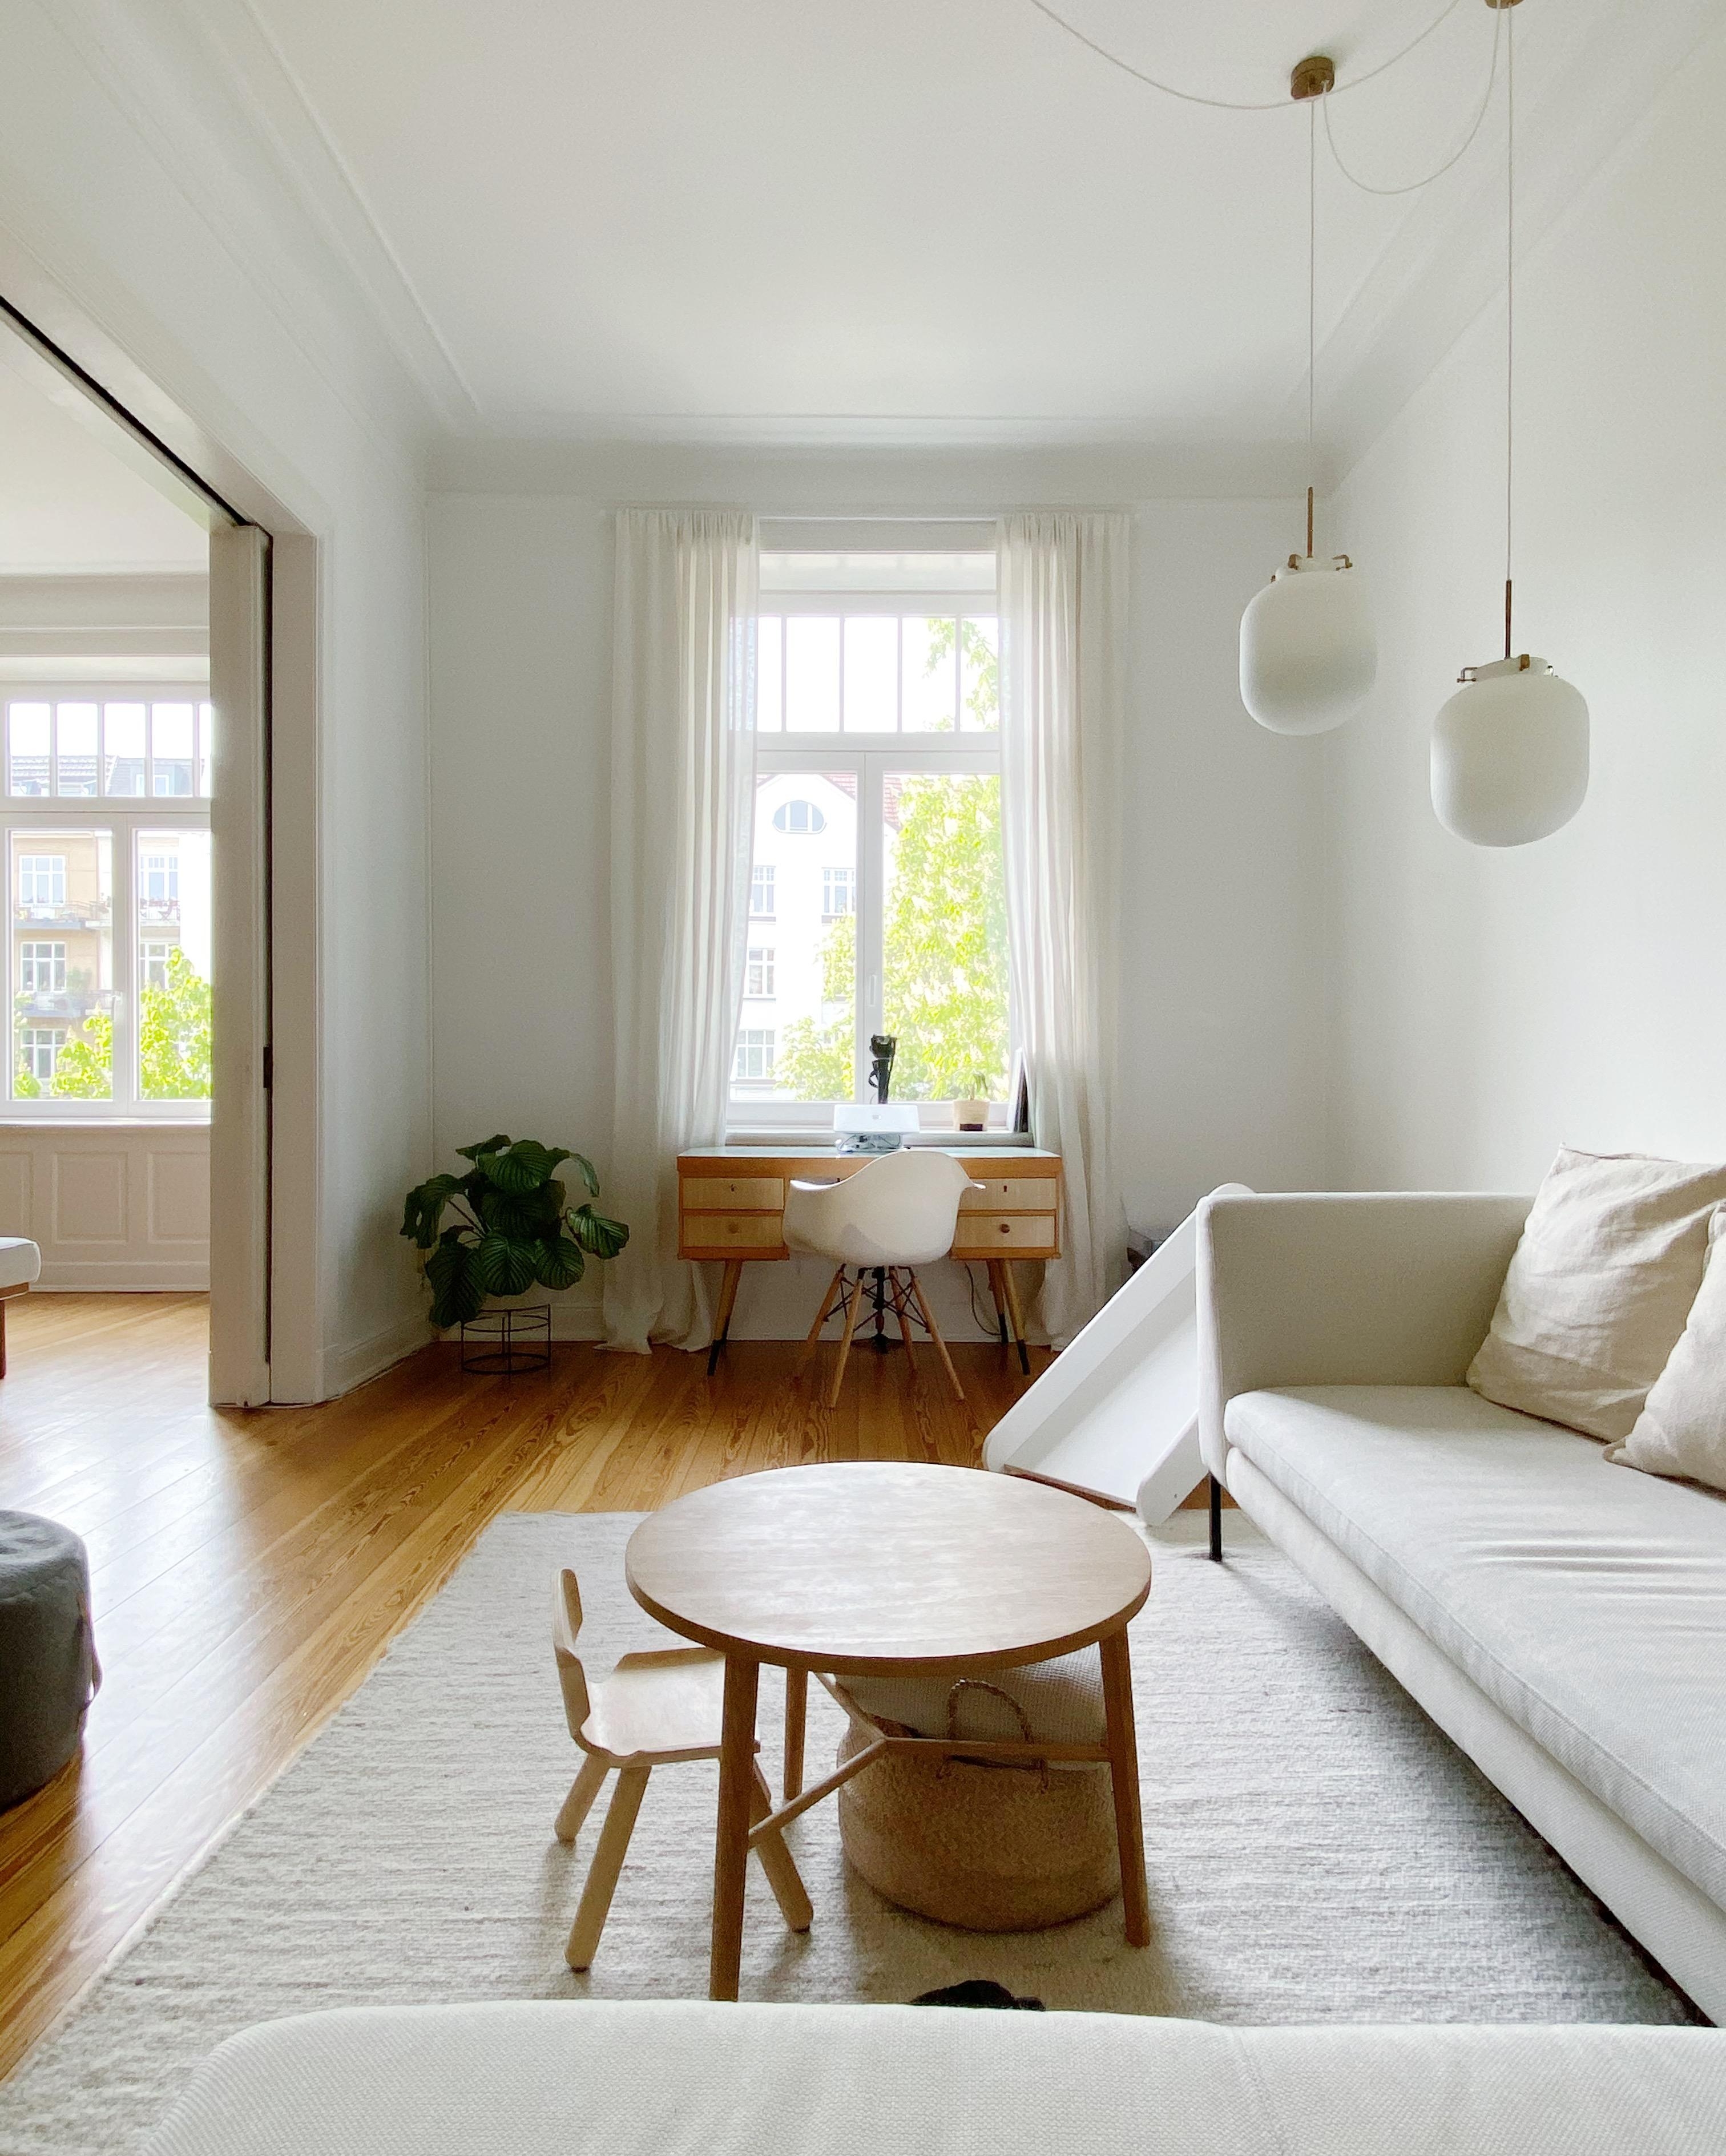 Unser Wohn- und Arbeitszimmer 😍 #altbau #couchstyle #wohnzimmer #arbeitszimmer #interior